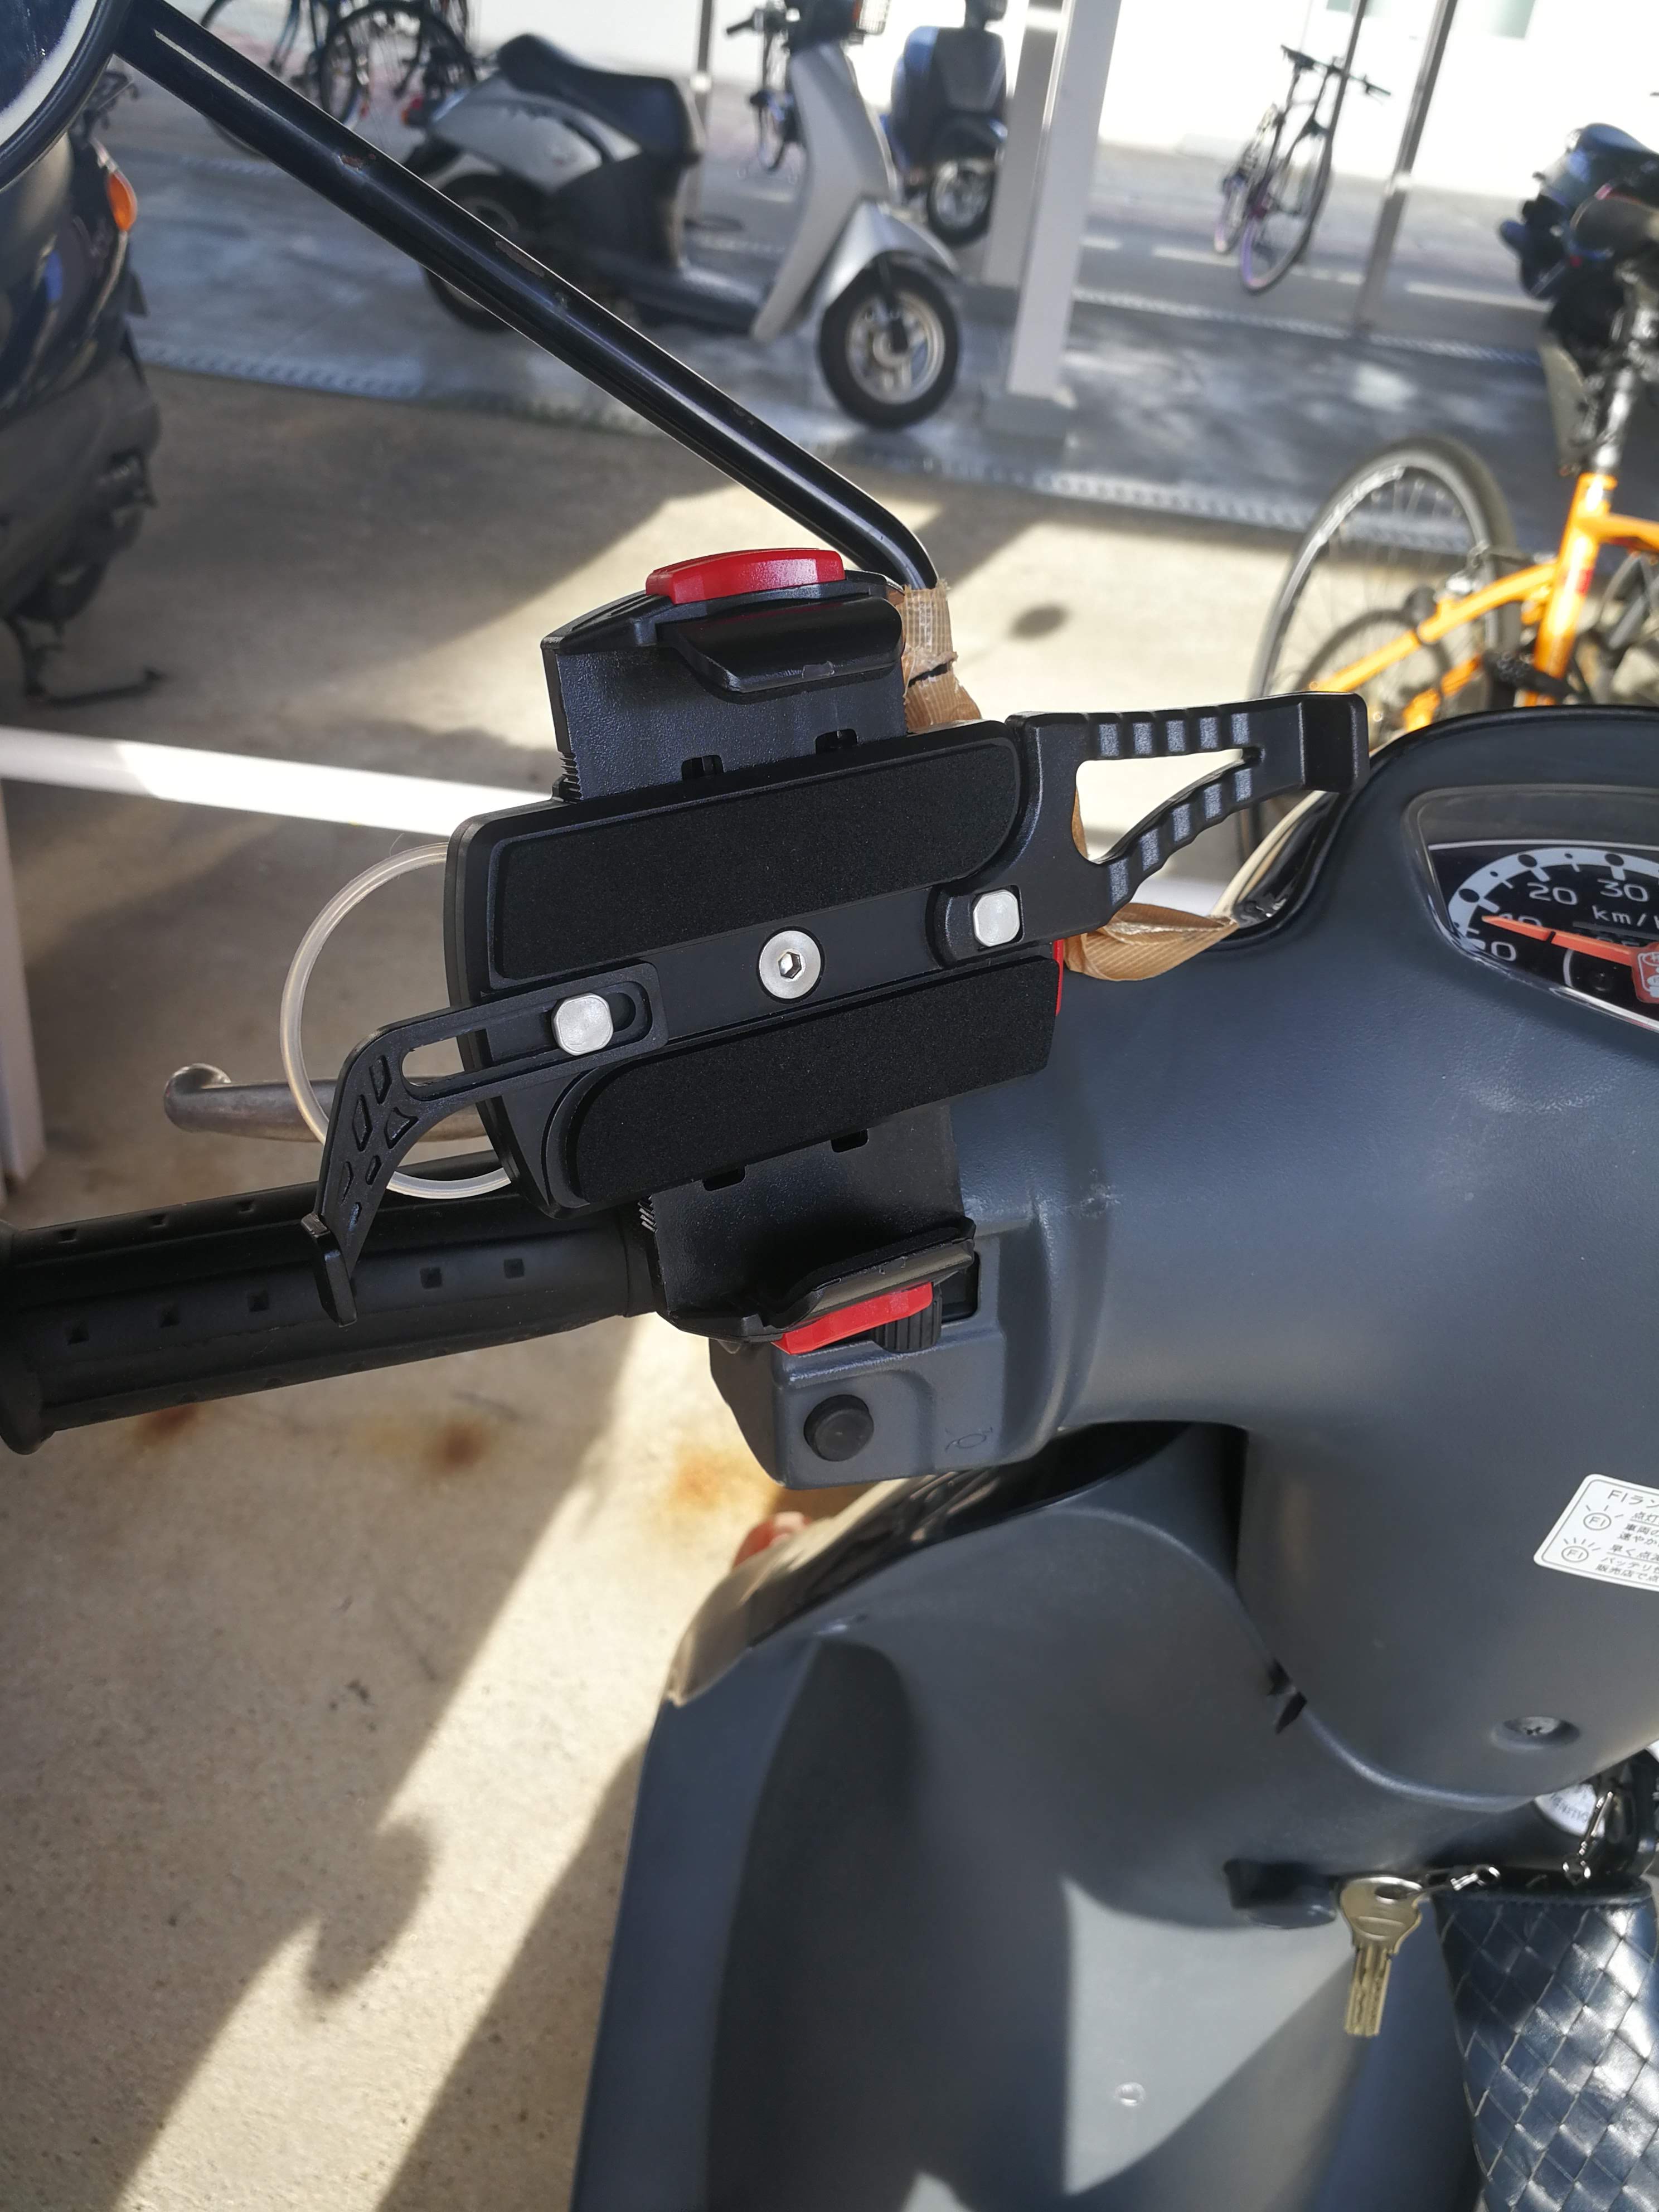 CHURACY 原付 スマホホルダー 走行中のビビリ音なし スクーター バイク用 携帯ホルダー (ブラック)